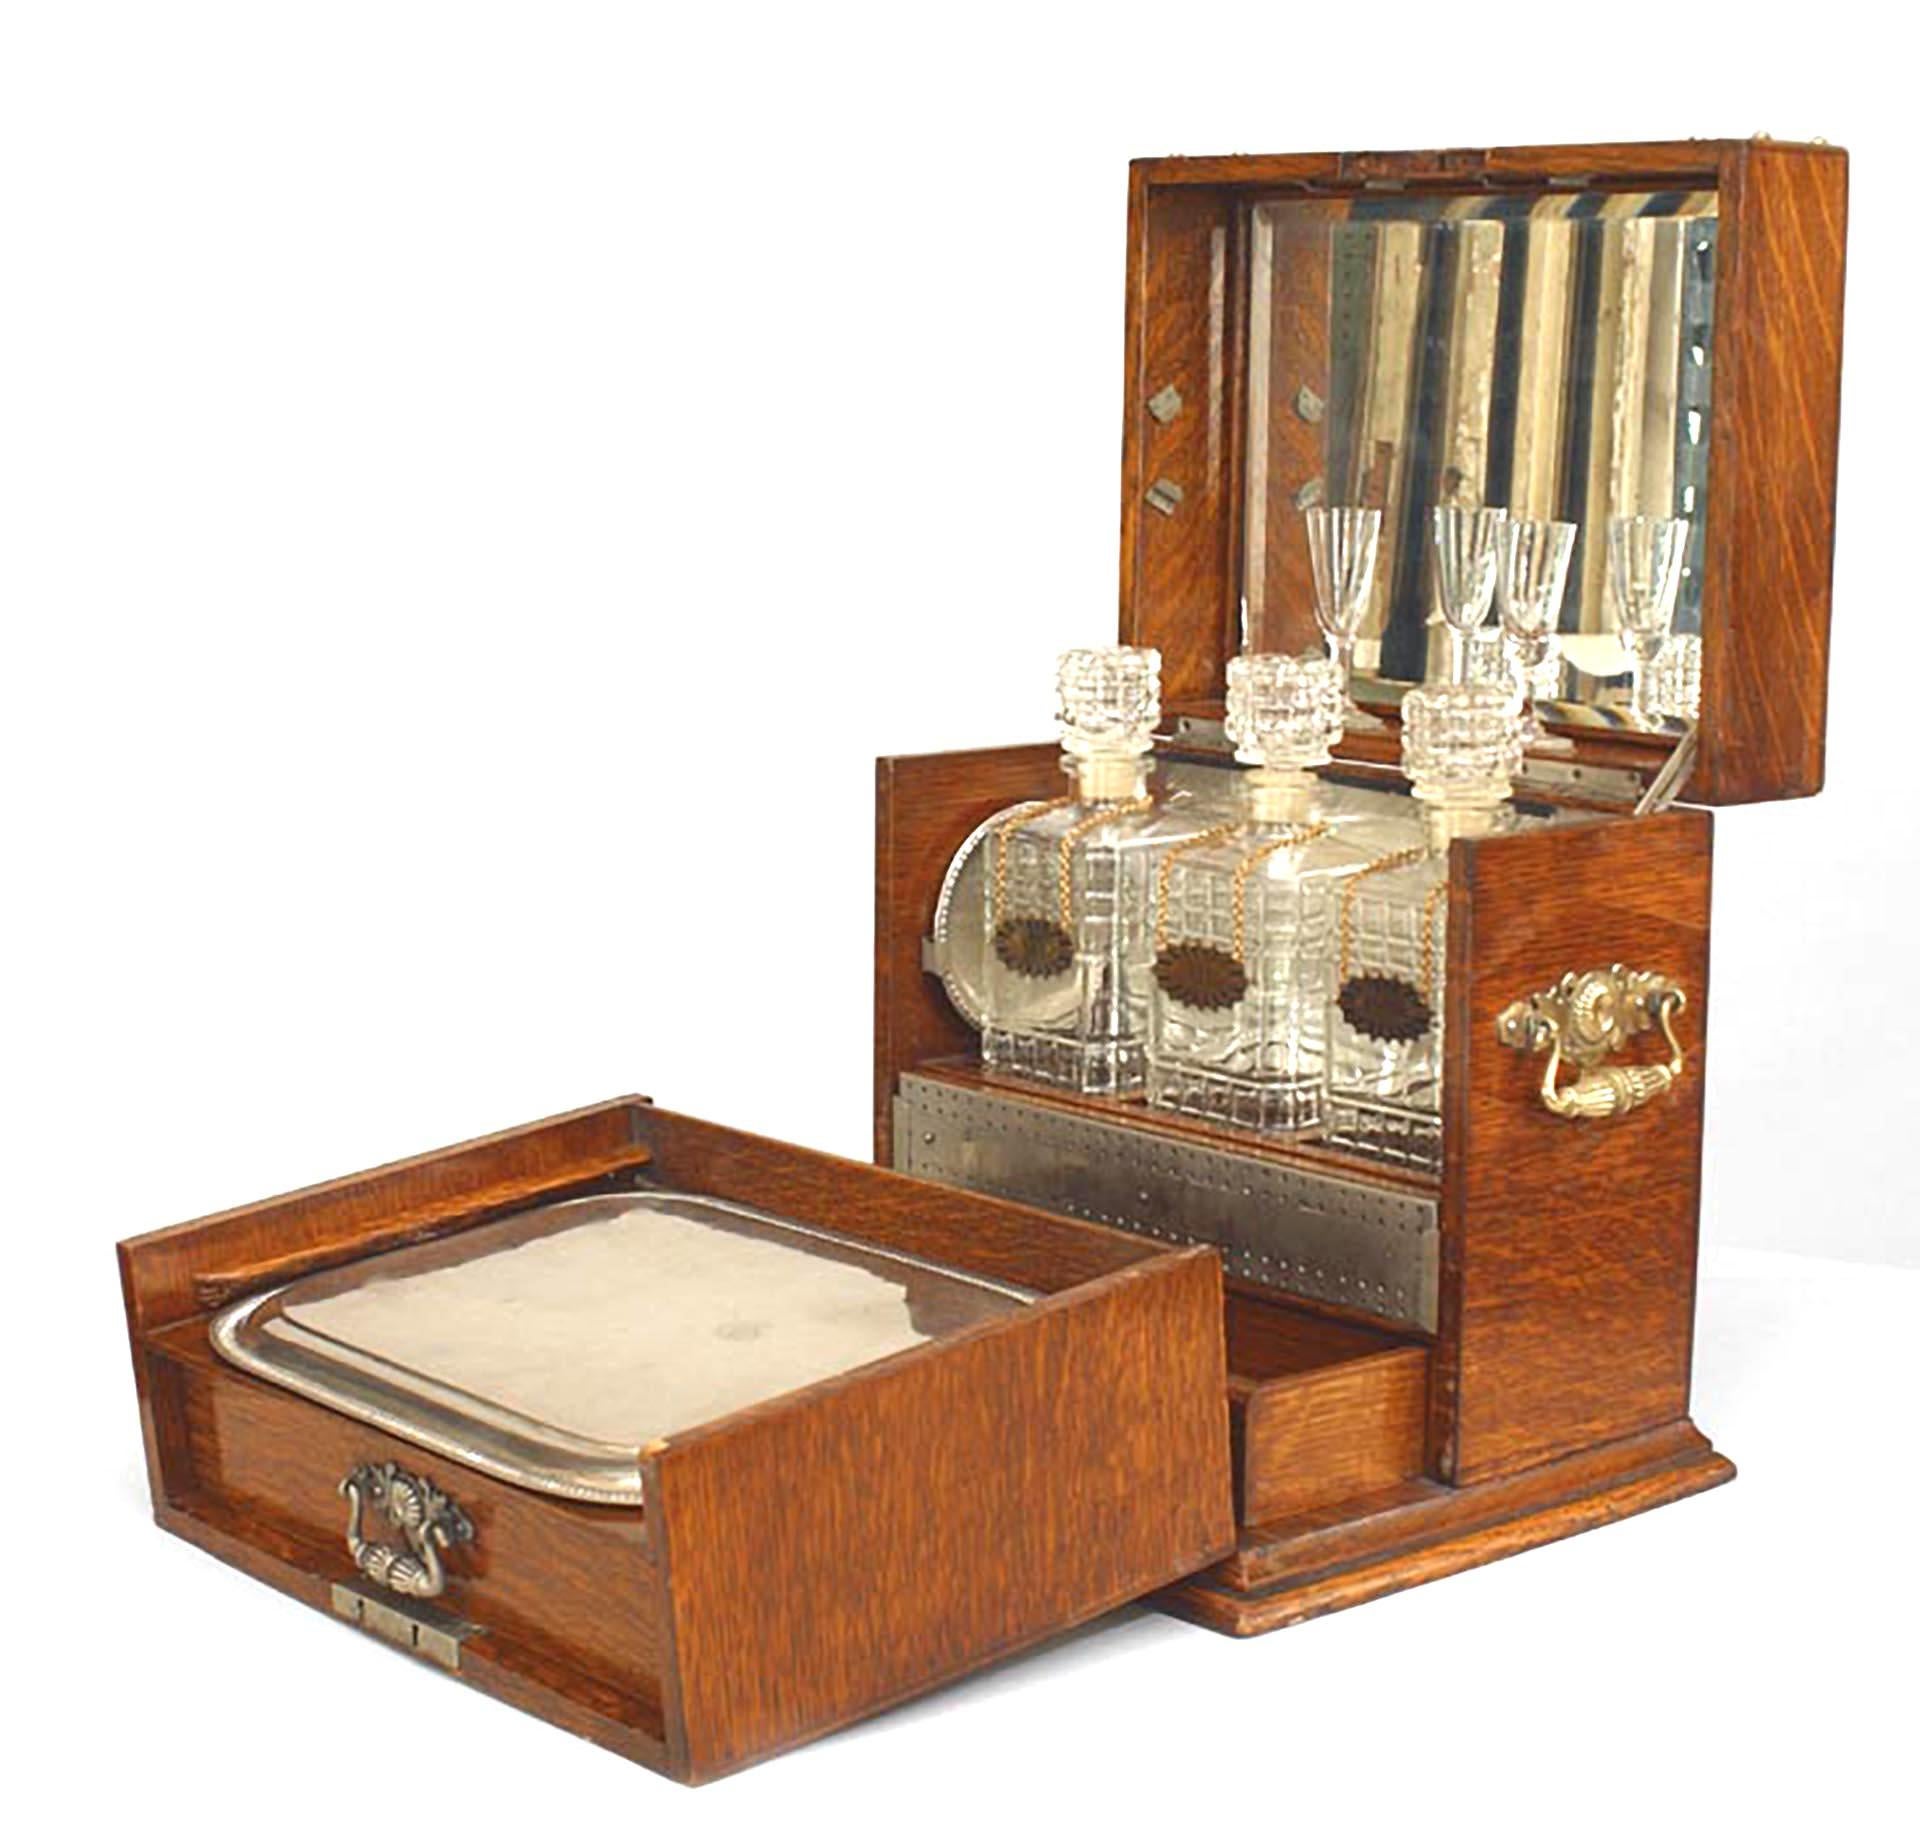 Boîte de voyage en chêne de l'époque victorienne anglaise avec coins, poignées et garnitures en filigrane de laiton (plateau en argent et 2 sous-verres, 2 verres à liqueur, 3 bouteilles en verre pressé).
 